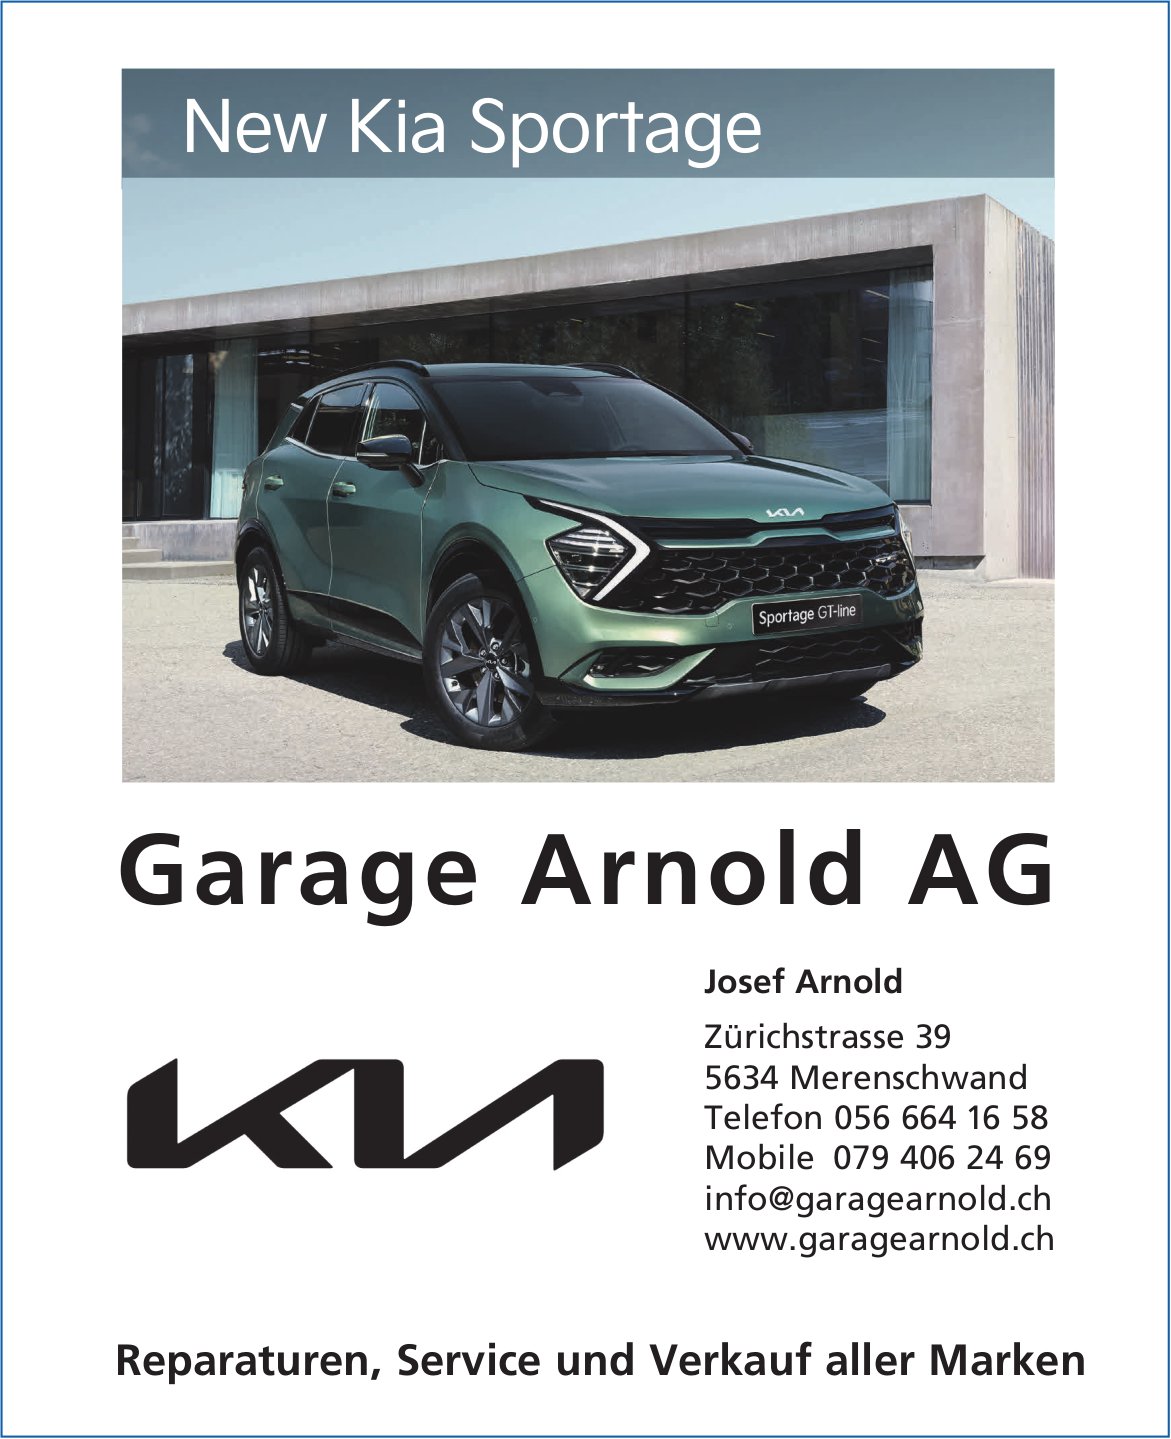 Garage Arnold AG, Merenschwand - Reparaturen, Service und Verkauf aller Marken